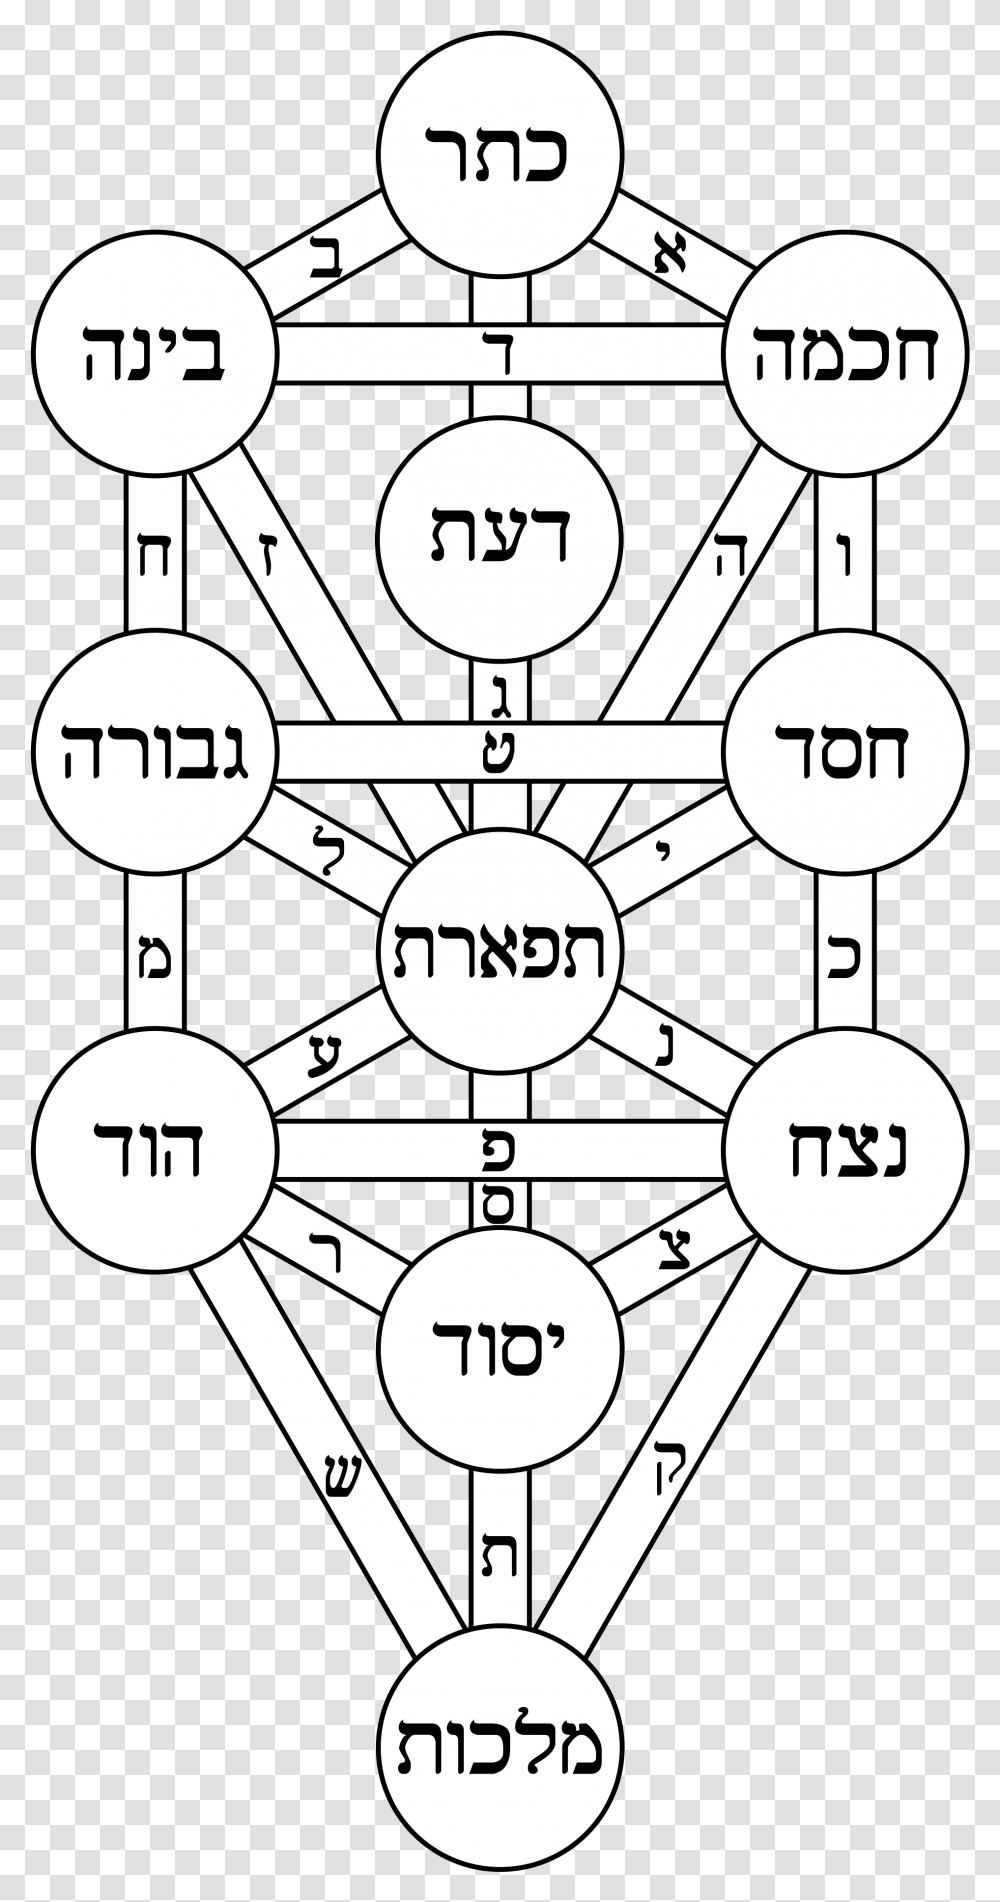 Tree Of Life Kircher Hebrew Athanasius Kircher Tree Of Life, Metropolis, Building, Text, Symbol Transparent Png